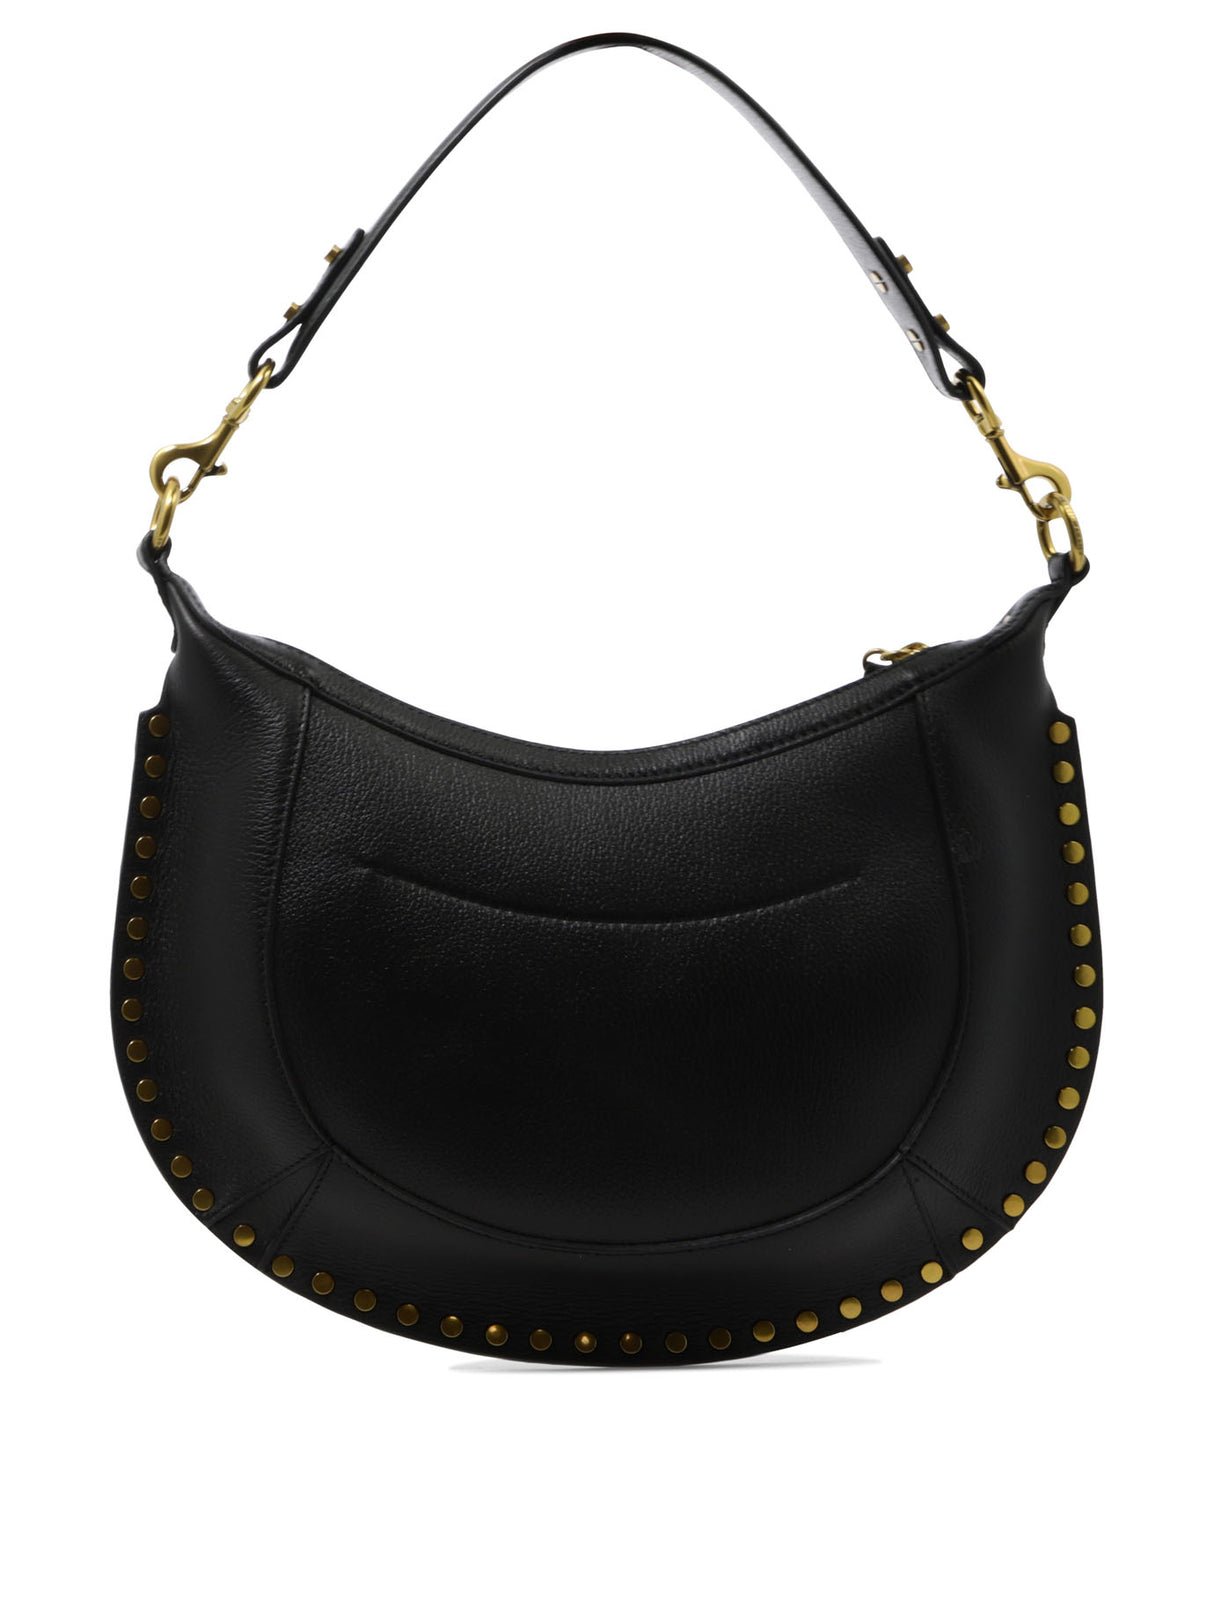 Black Shoulder Handbag with Adjustable Strap and Inner Slip Pockets